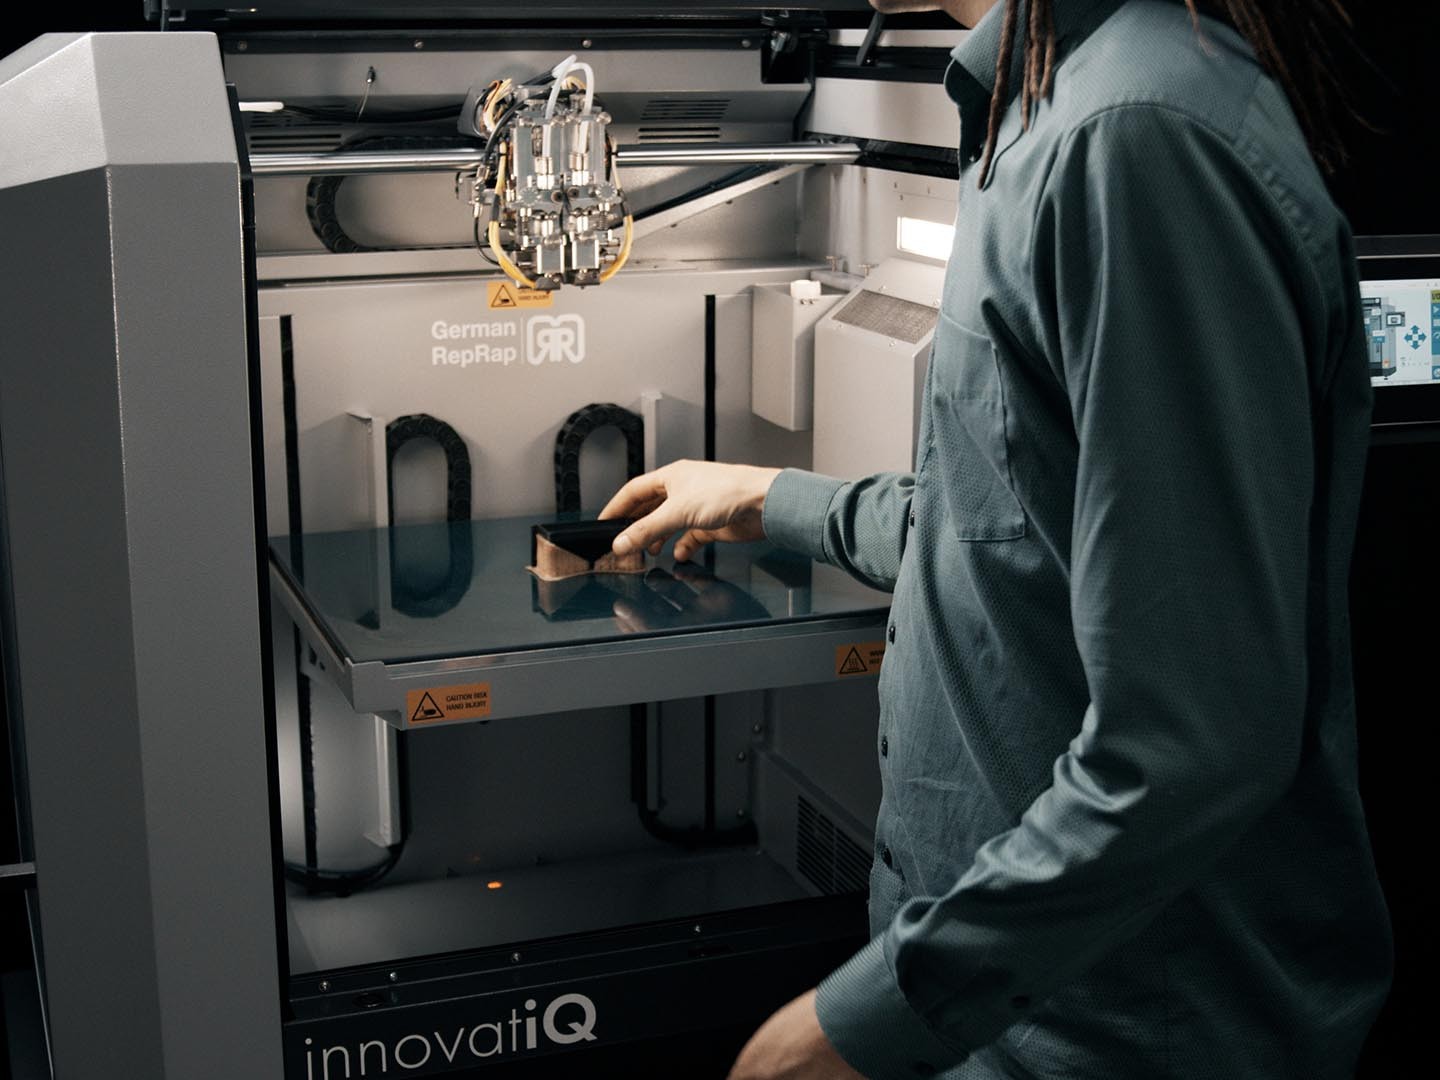 Retrait de la TiQ 5 - imprimante 3D par innovatiQ = Germanreprap